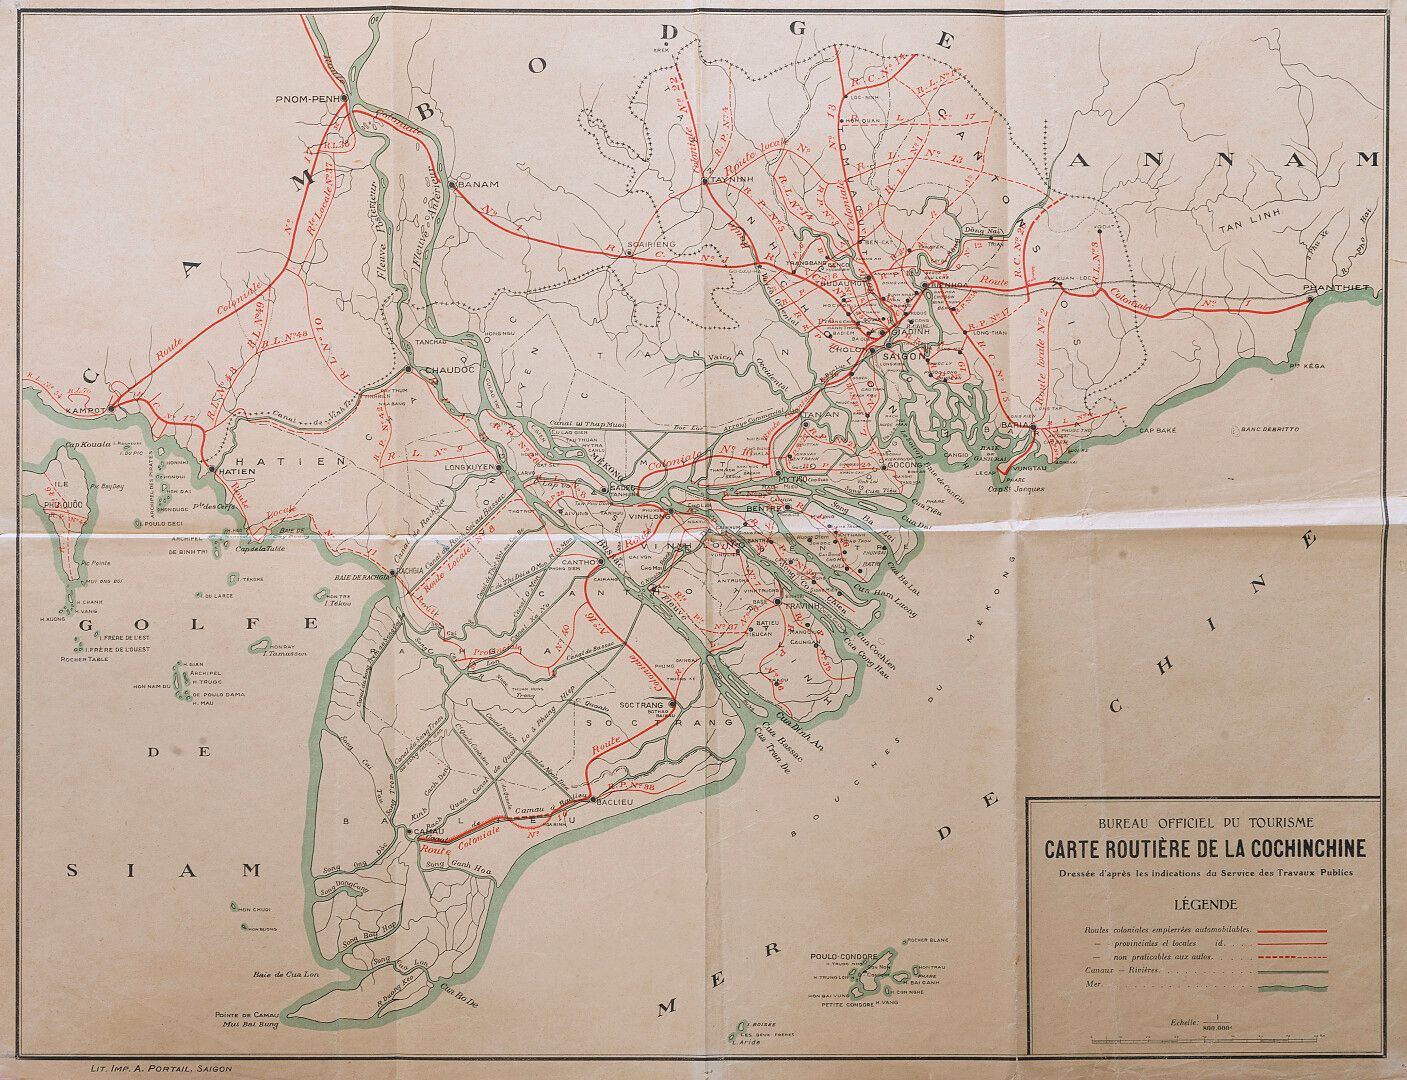 Null S.D. (1930 circa)

Mappa stradale della Cochinchina pubblicata dall'Ufficio&hellip;